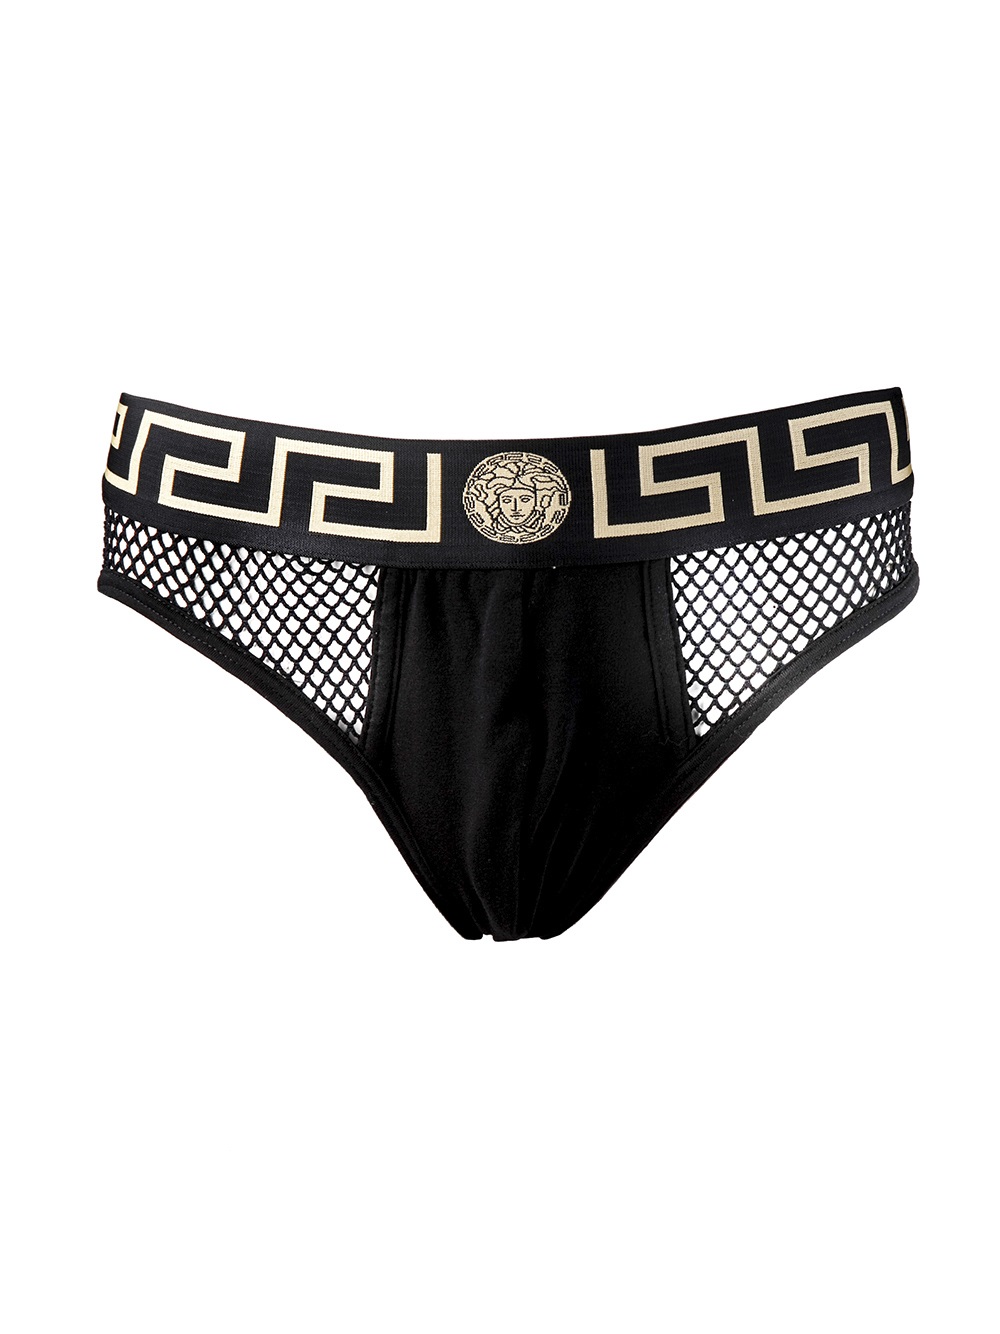 versace men's underwear